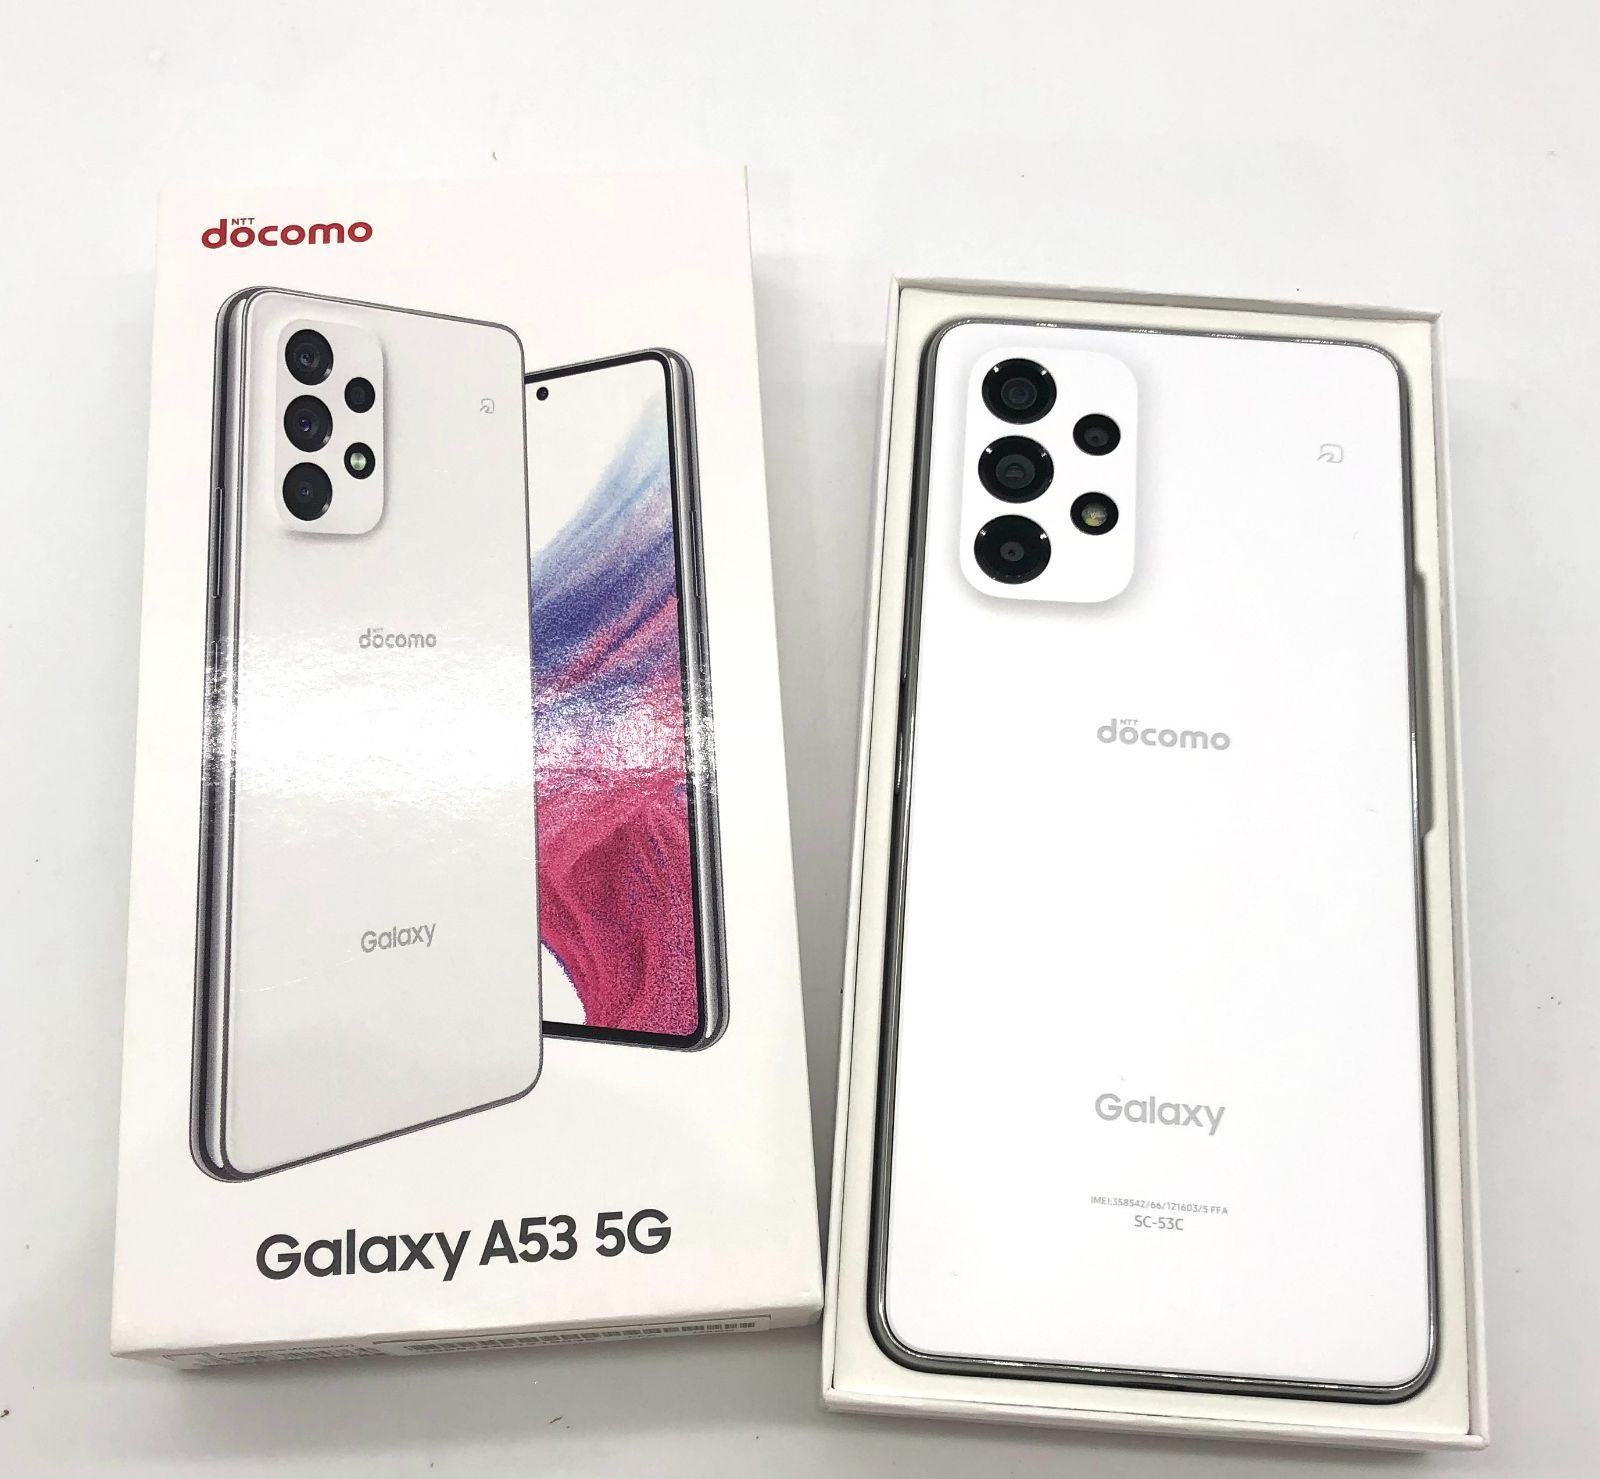 【SIM FREE】docomo Galaxy A53 5G SC-53C 白